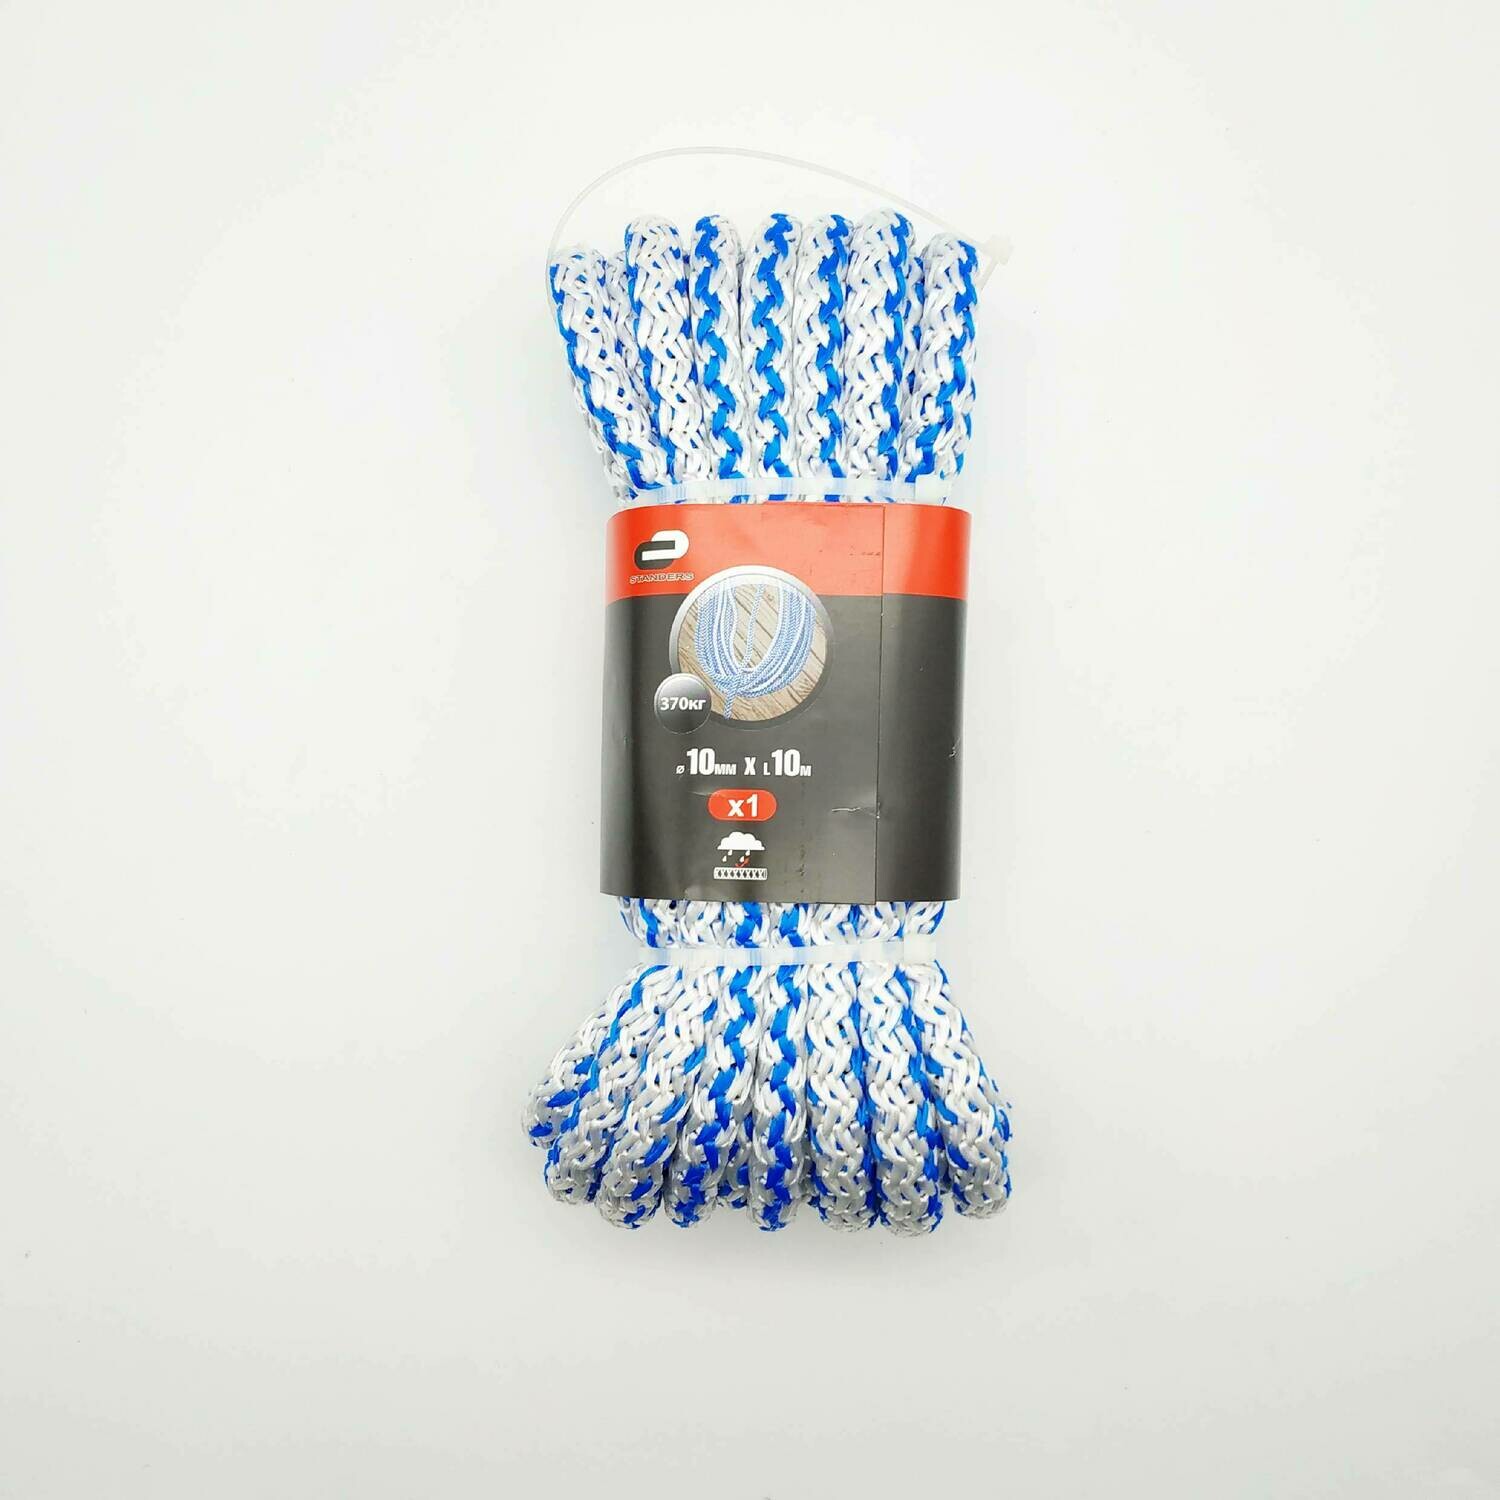 Веревка (Шнур) хозяйственно-бытовой Standers с сердечником 10 мм, 10 м, на 370 кг., цвет белый/синий